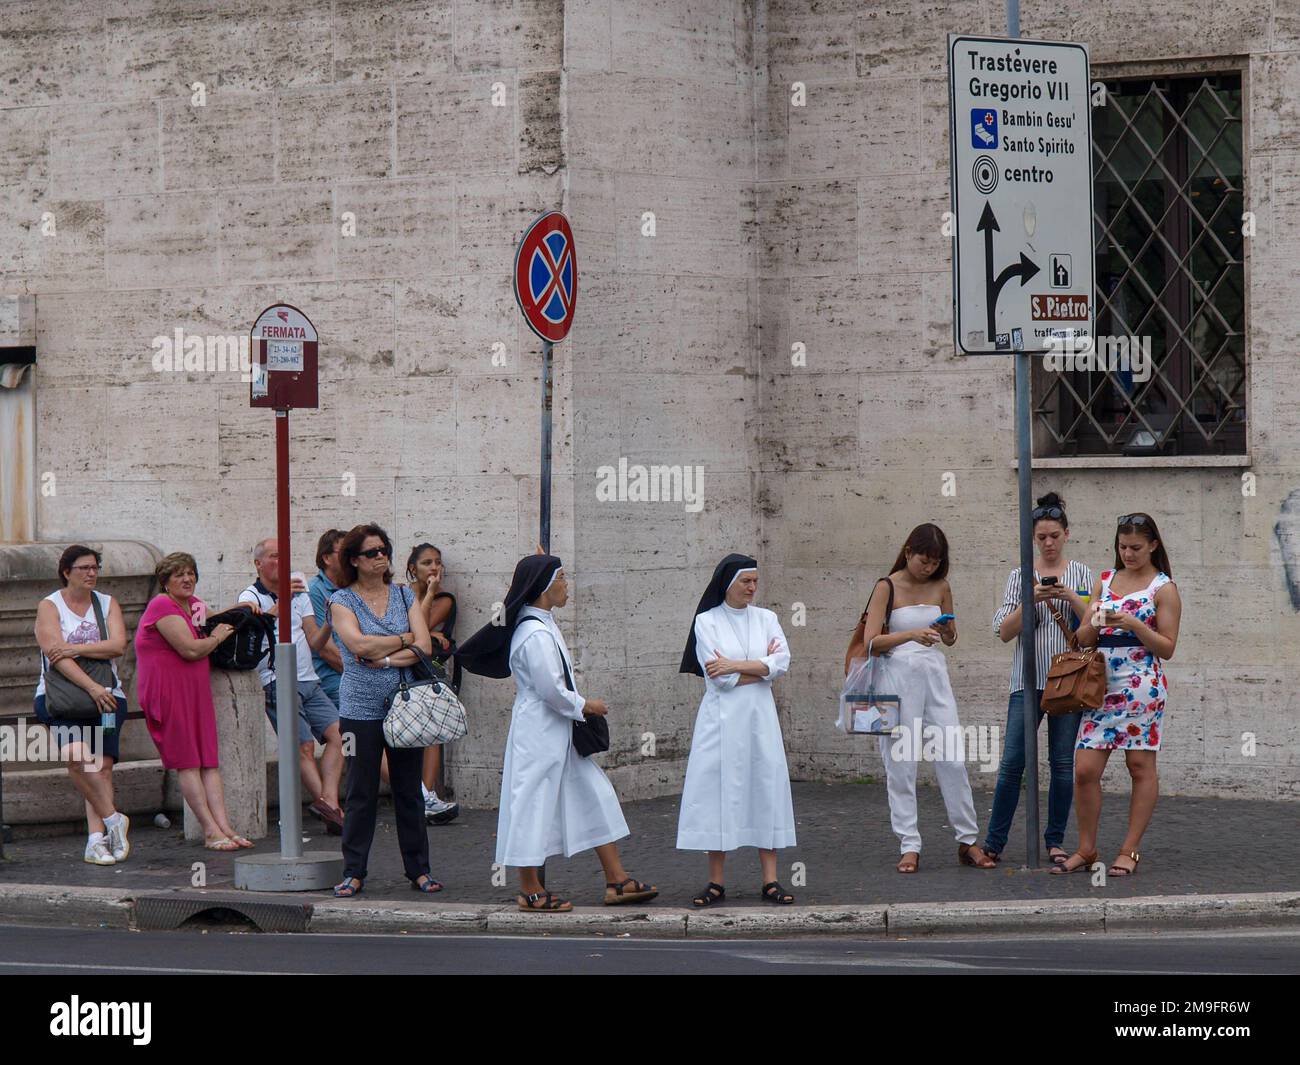 Deux religieuses sont debout parmi un groupe de personnes à l'arrêt des transports publics dans la rue de Rome Banque D'Images